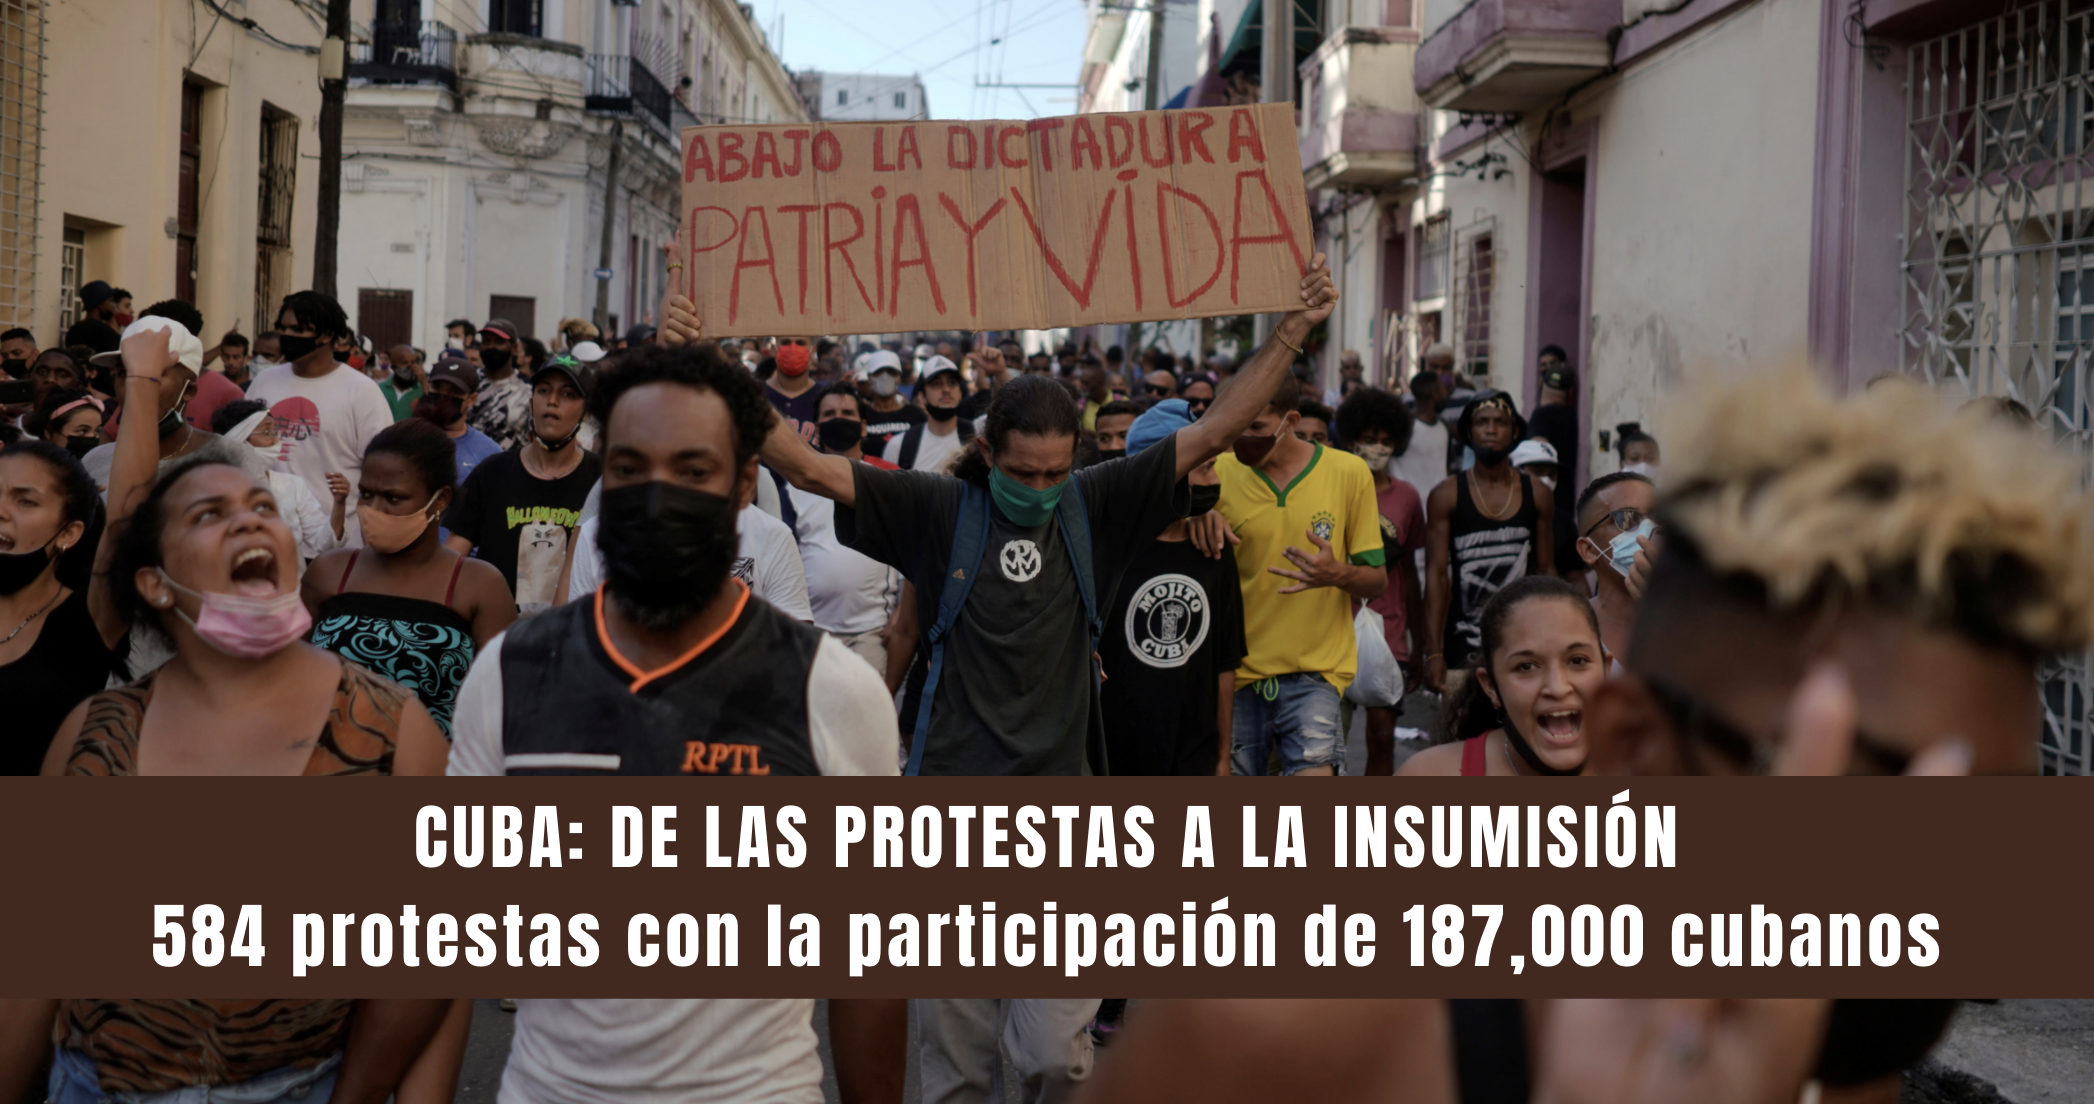 CUBA: DE LAS PROTESTAS A LA INSUMISIÓN